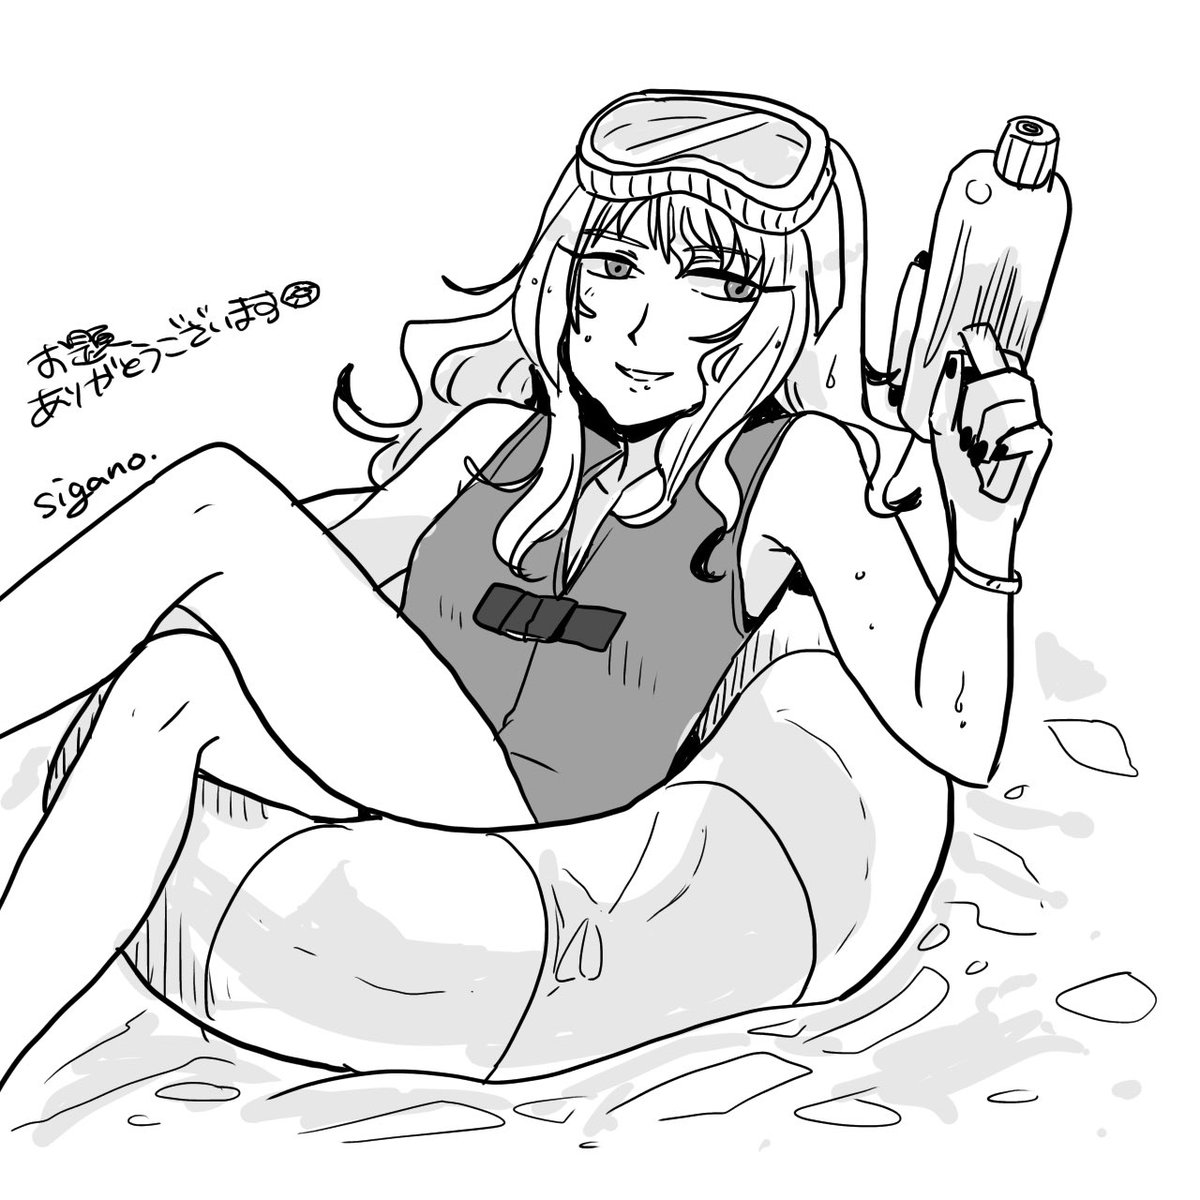 お題箱より「浮き輪とライフジャケット着用でプールで遊ぶ女の子描いて下さい」
🏖🔫
#odaibako_kakao1207 